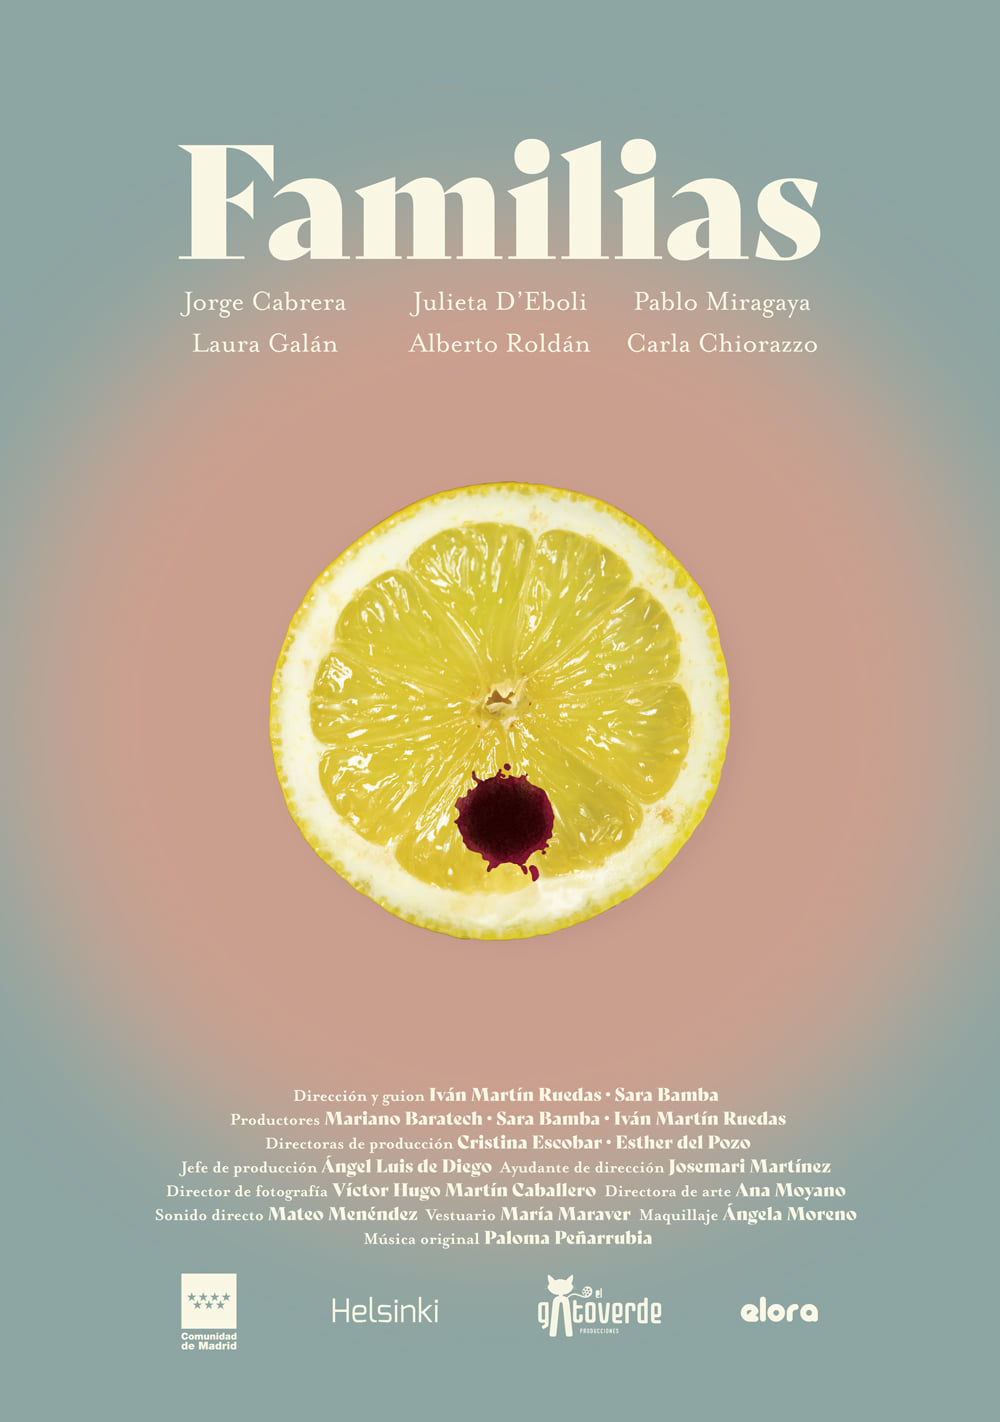 Cartel del cortometraje Familias, en el que aparece medio limón con una mancha de sangre sobre fondo de colores pastel